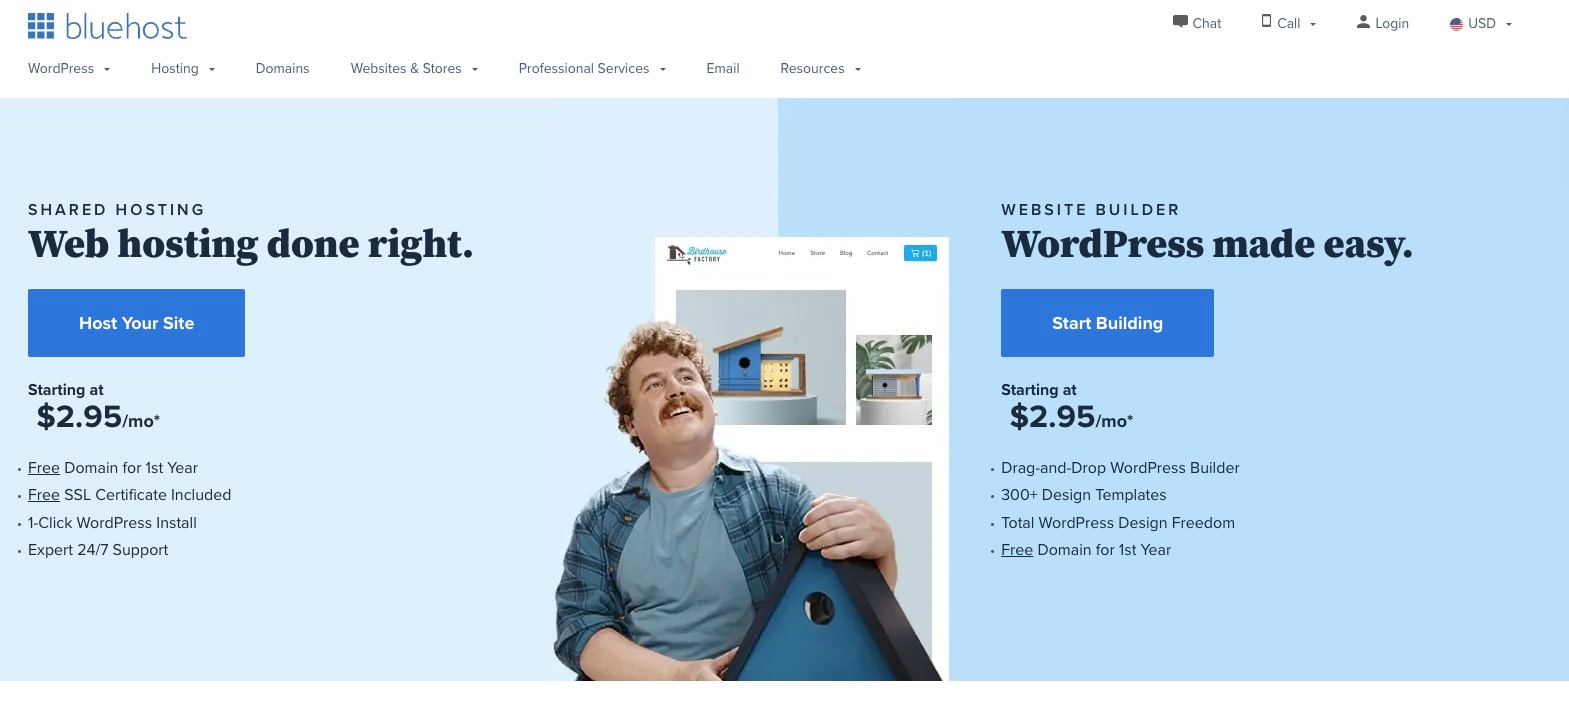 WordPress Hosting for Beginners: Bluehost homepage.